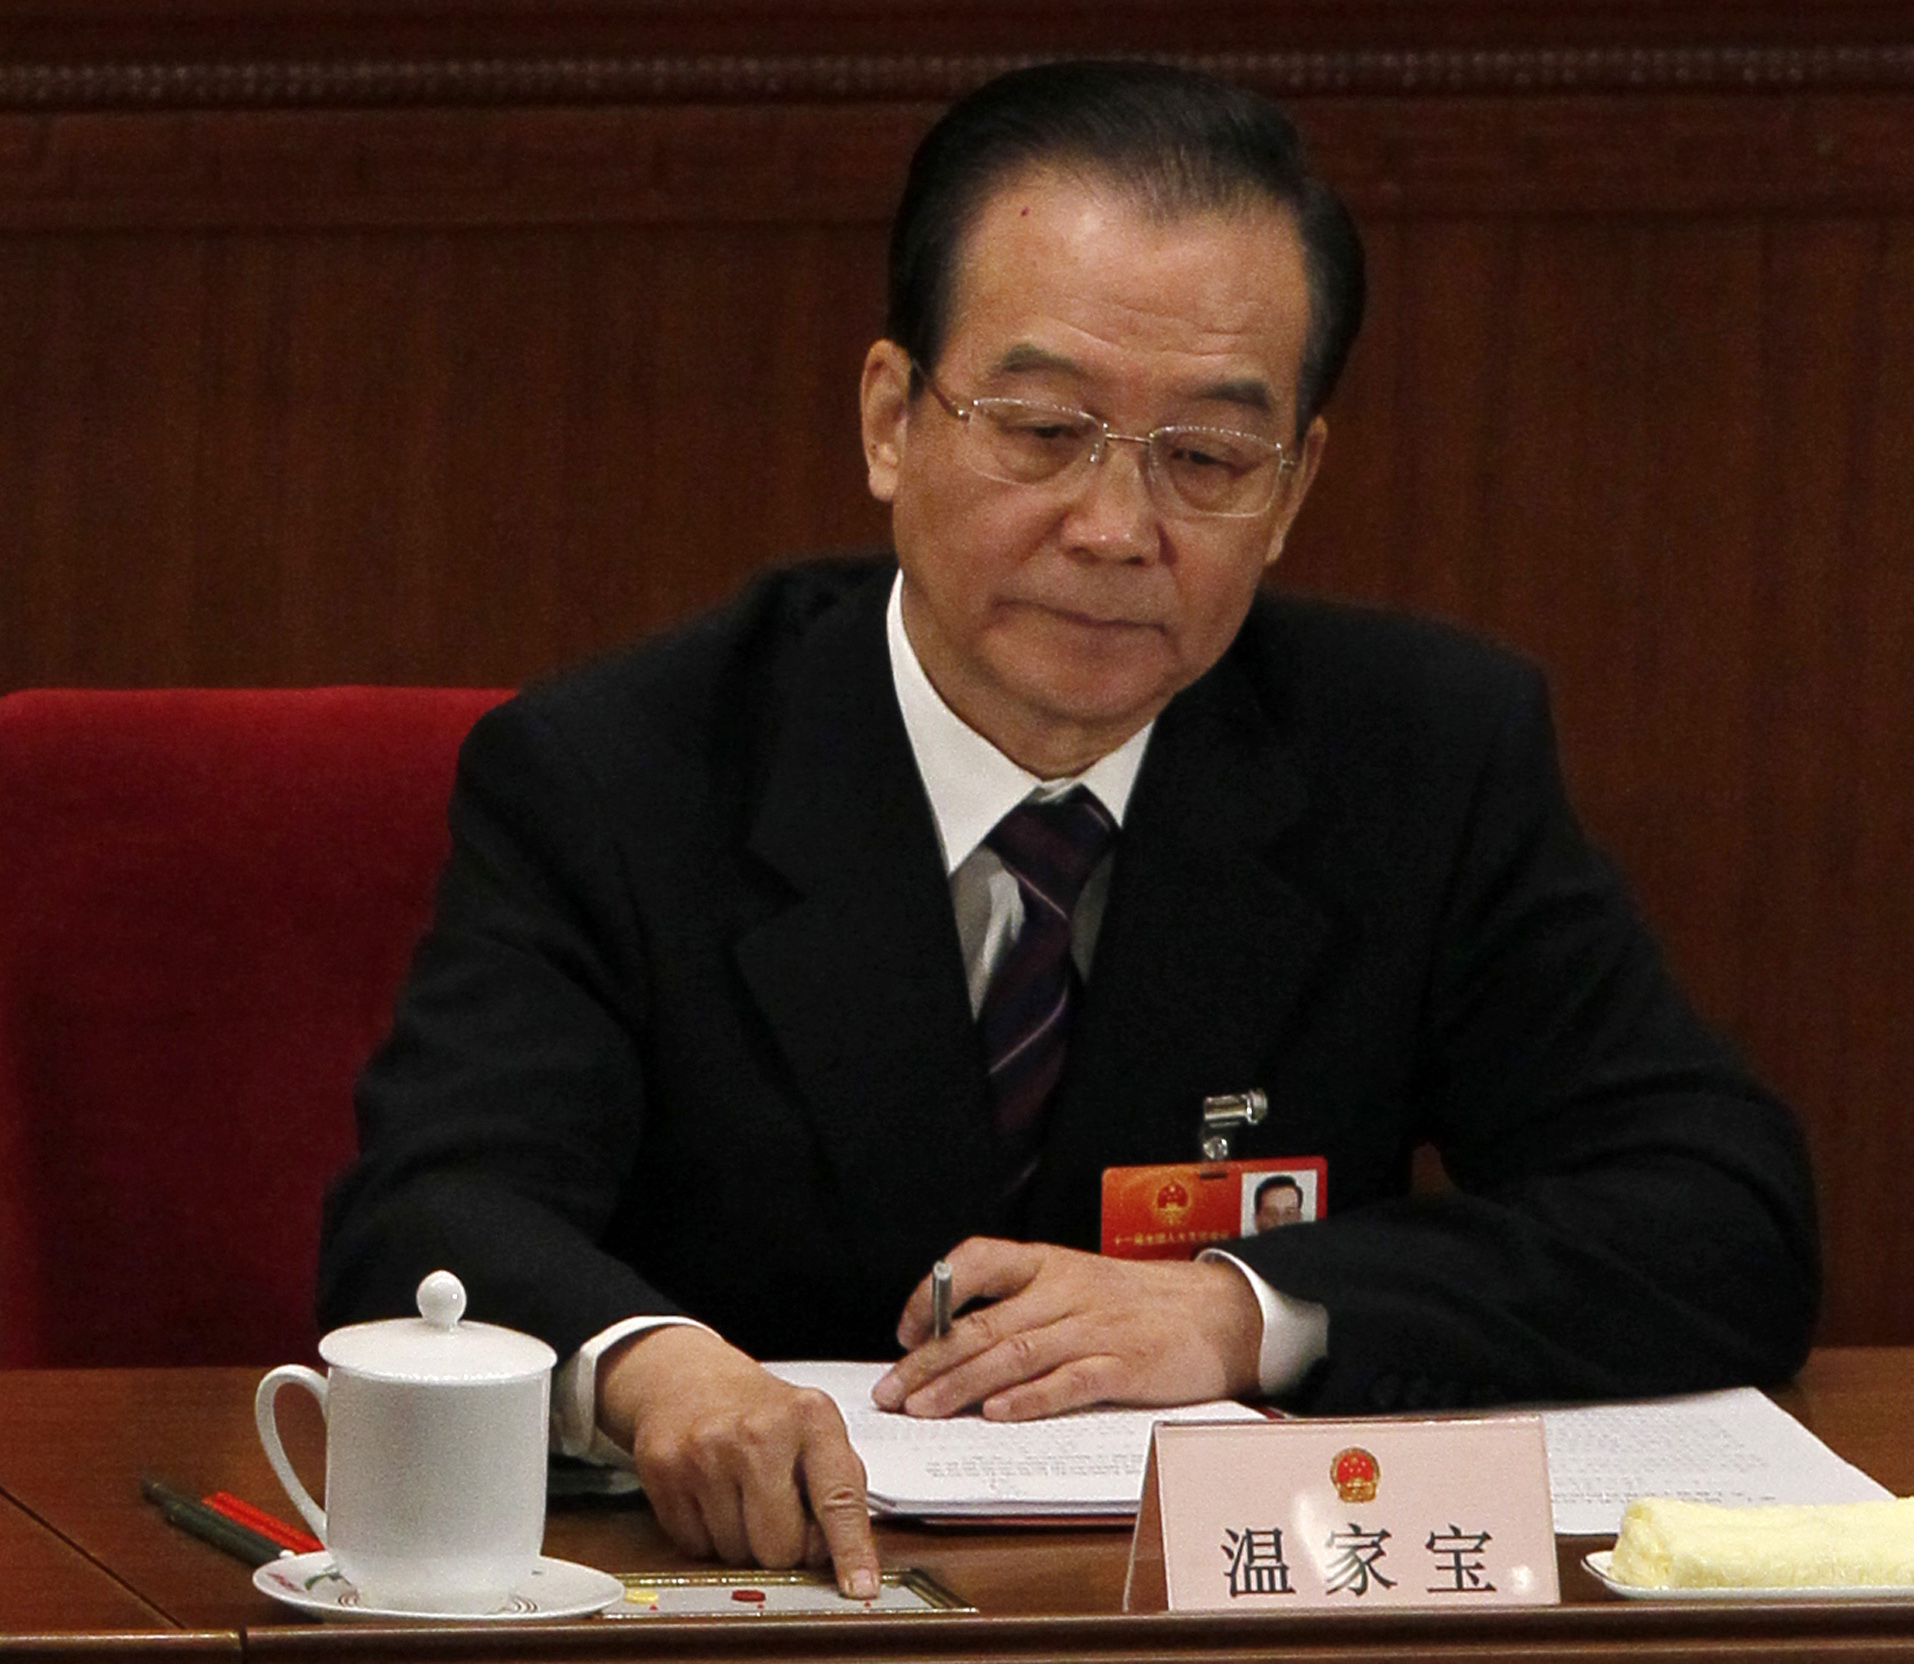 Den 23 april ska Lööf ta emot Kinas premiärminister Wen Jiabao. På söndagen tyddliggjorde hon på nytt att Kina trots allt är en diktatur.